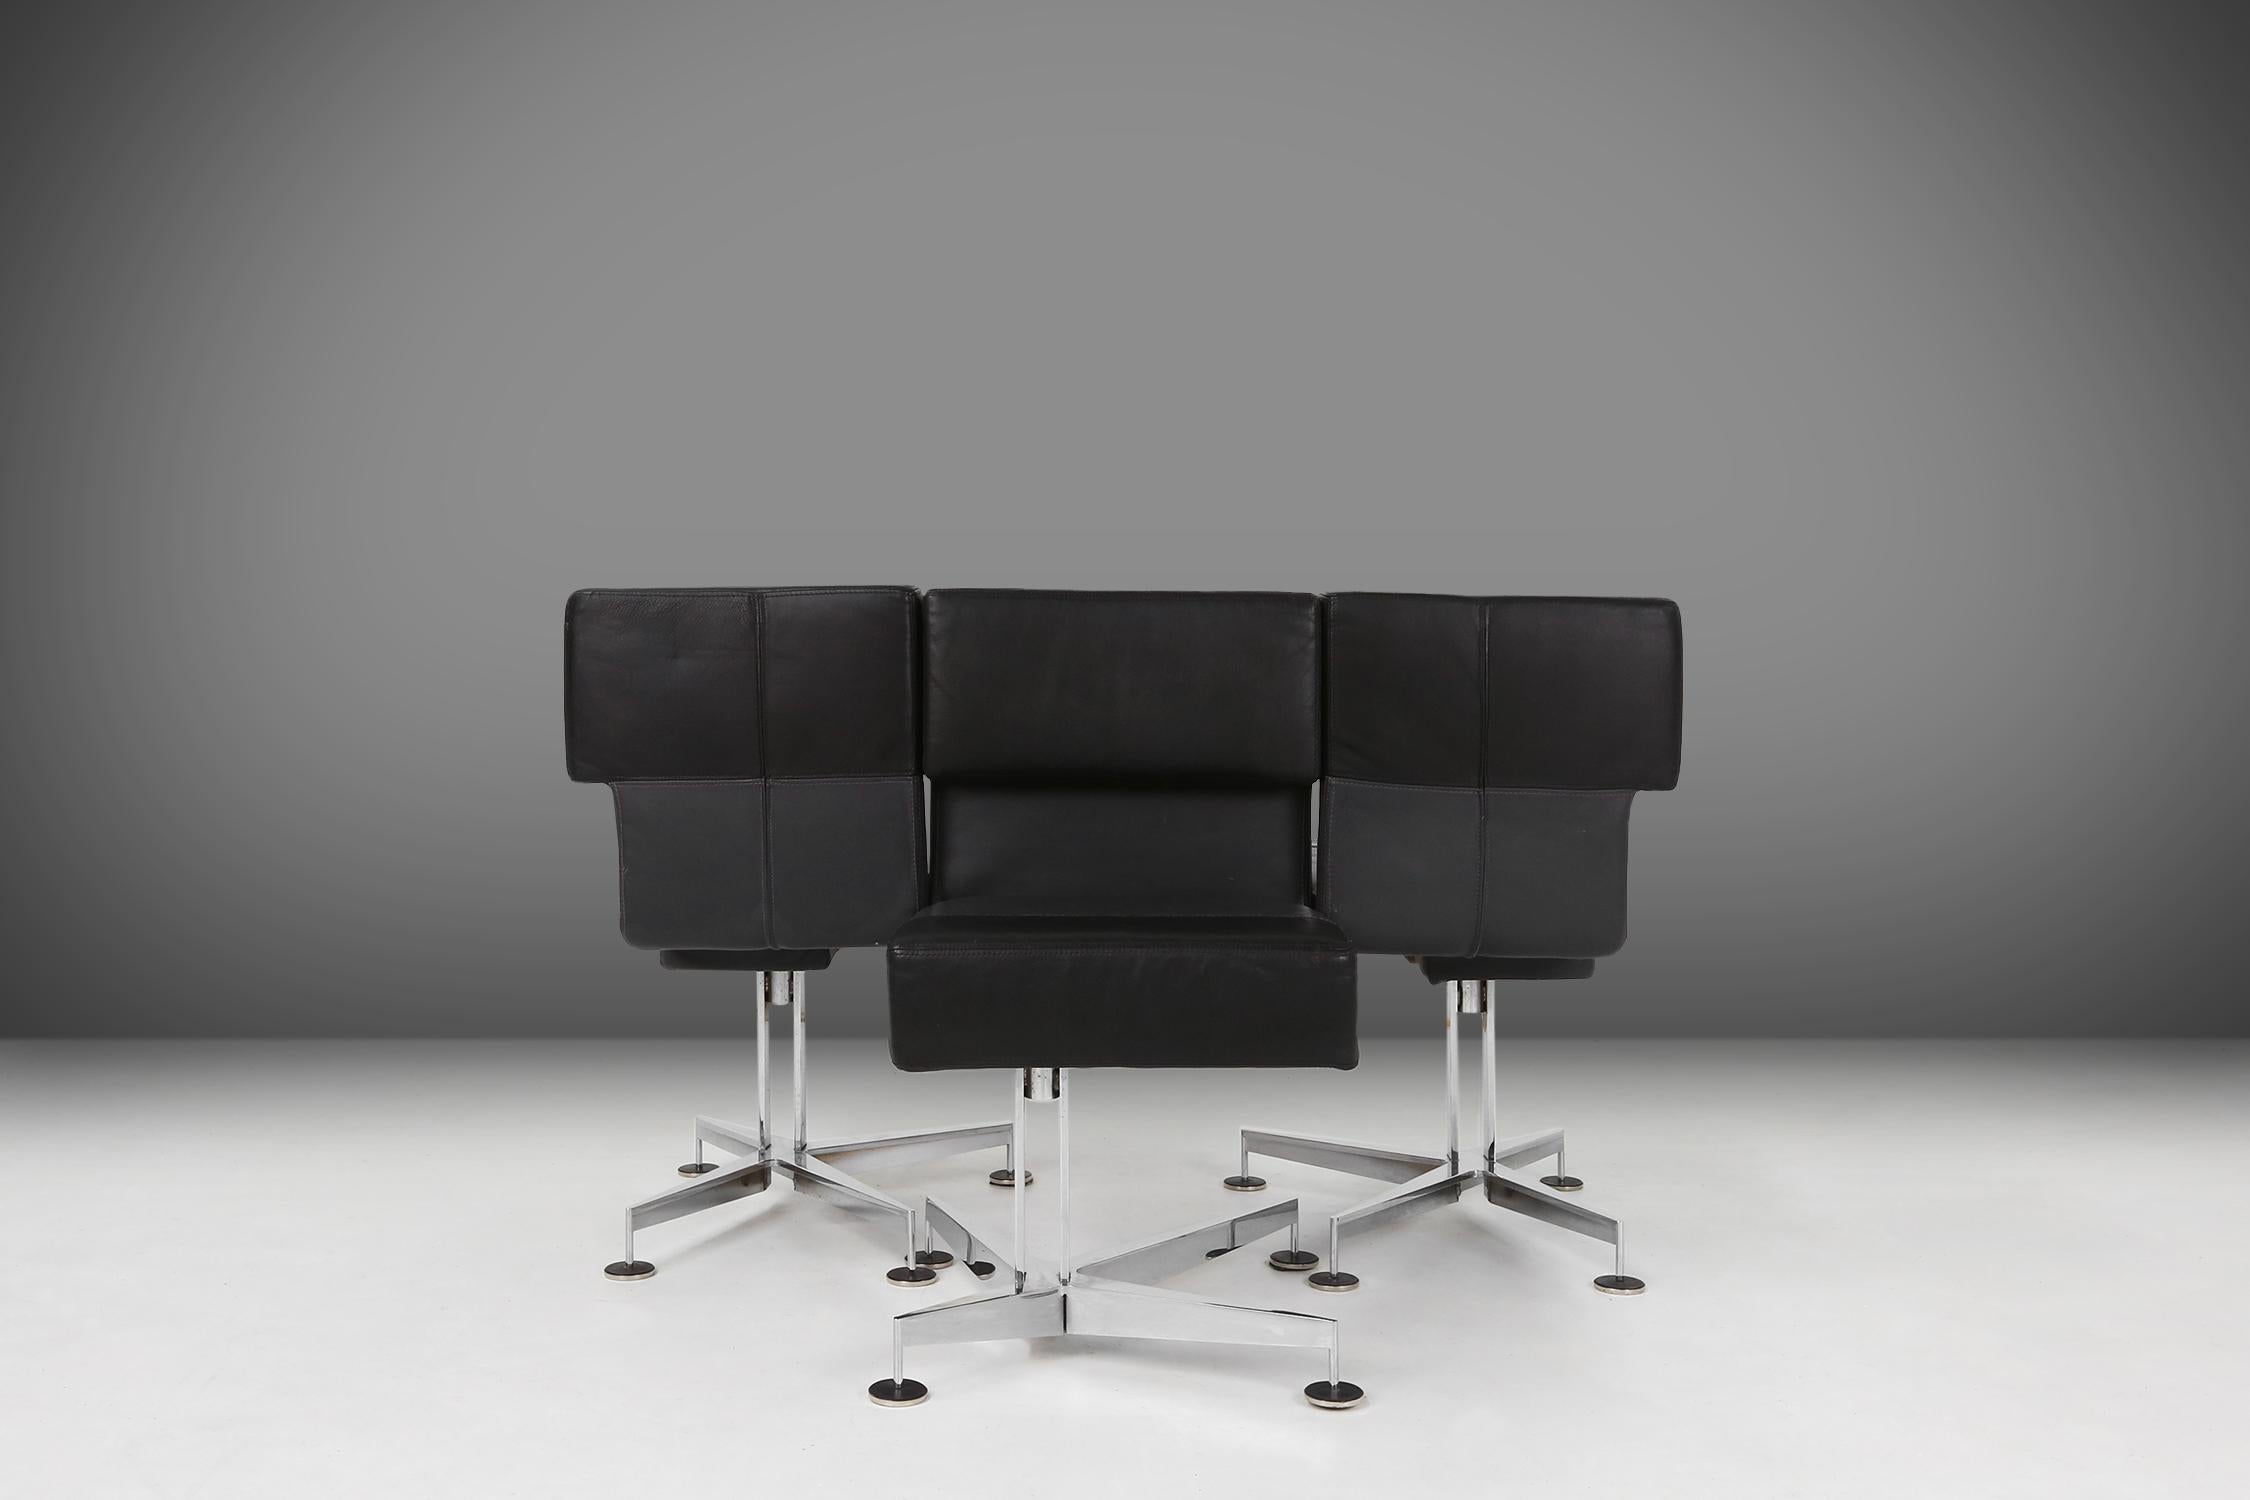 Fabriquées en 1980 par Sedus, ces chaises sont un modèle de qualité et de design. Ils sont fabriqués en cuir noir et gris, ce qui leur confère un aspect luxueux et confortable. La base en métal lourd, qui est chromée, assure la stabilité et la